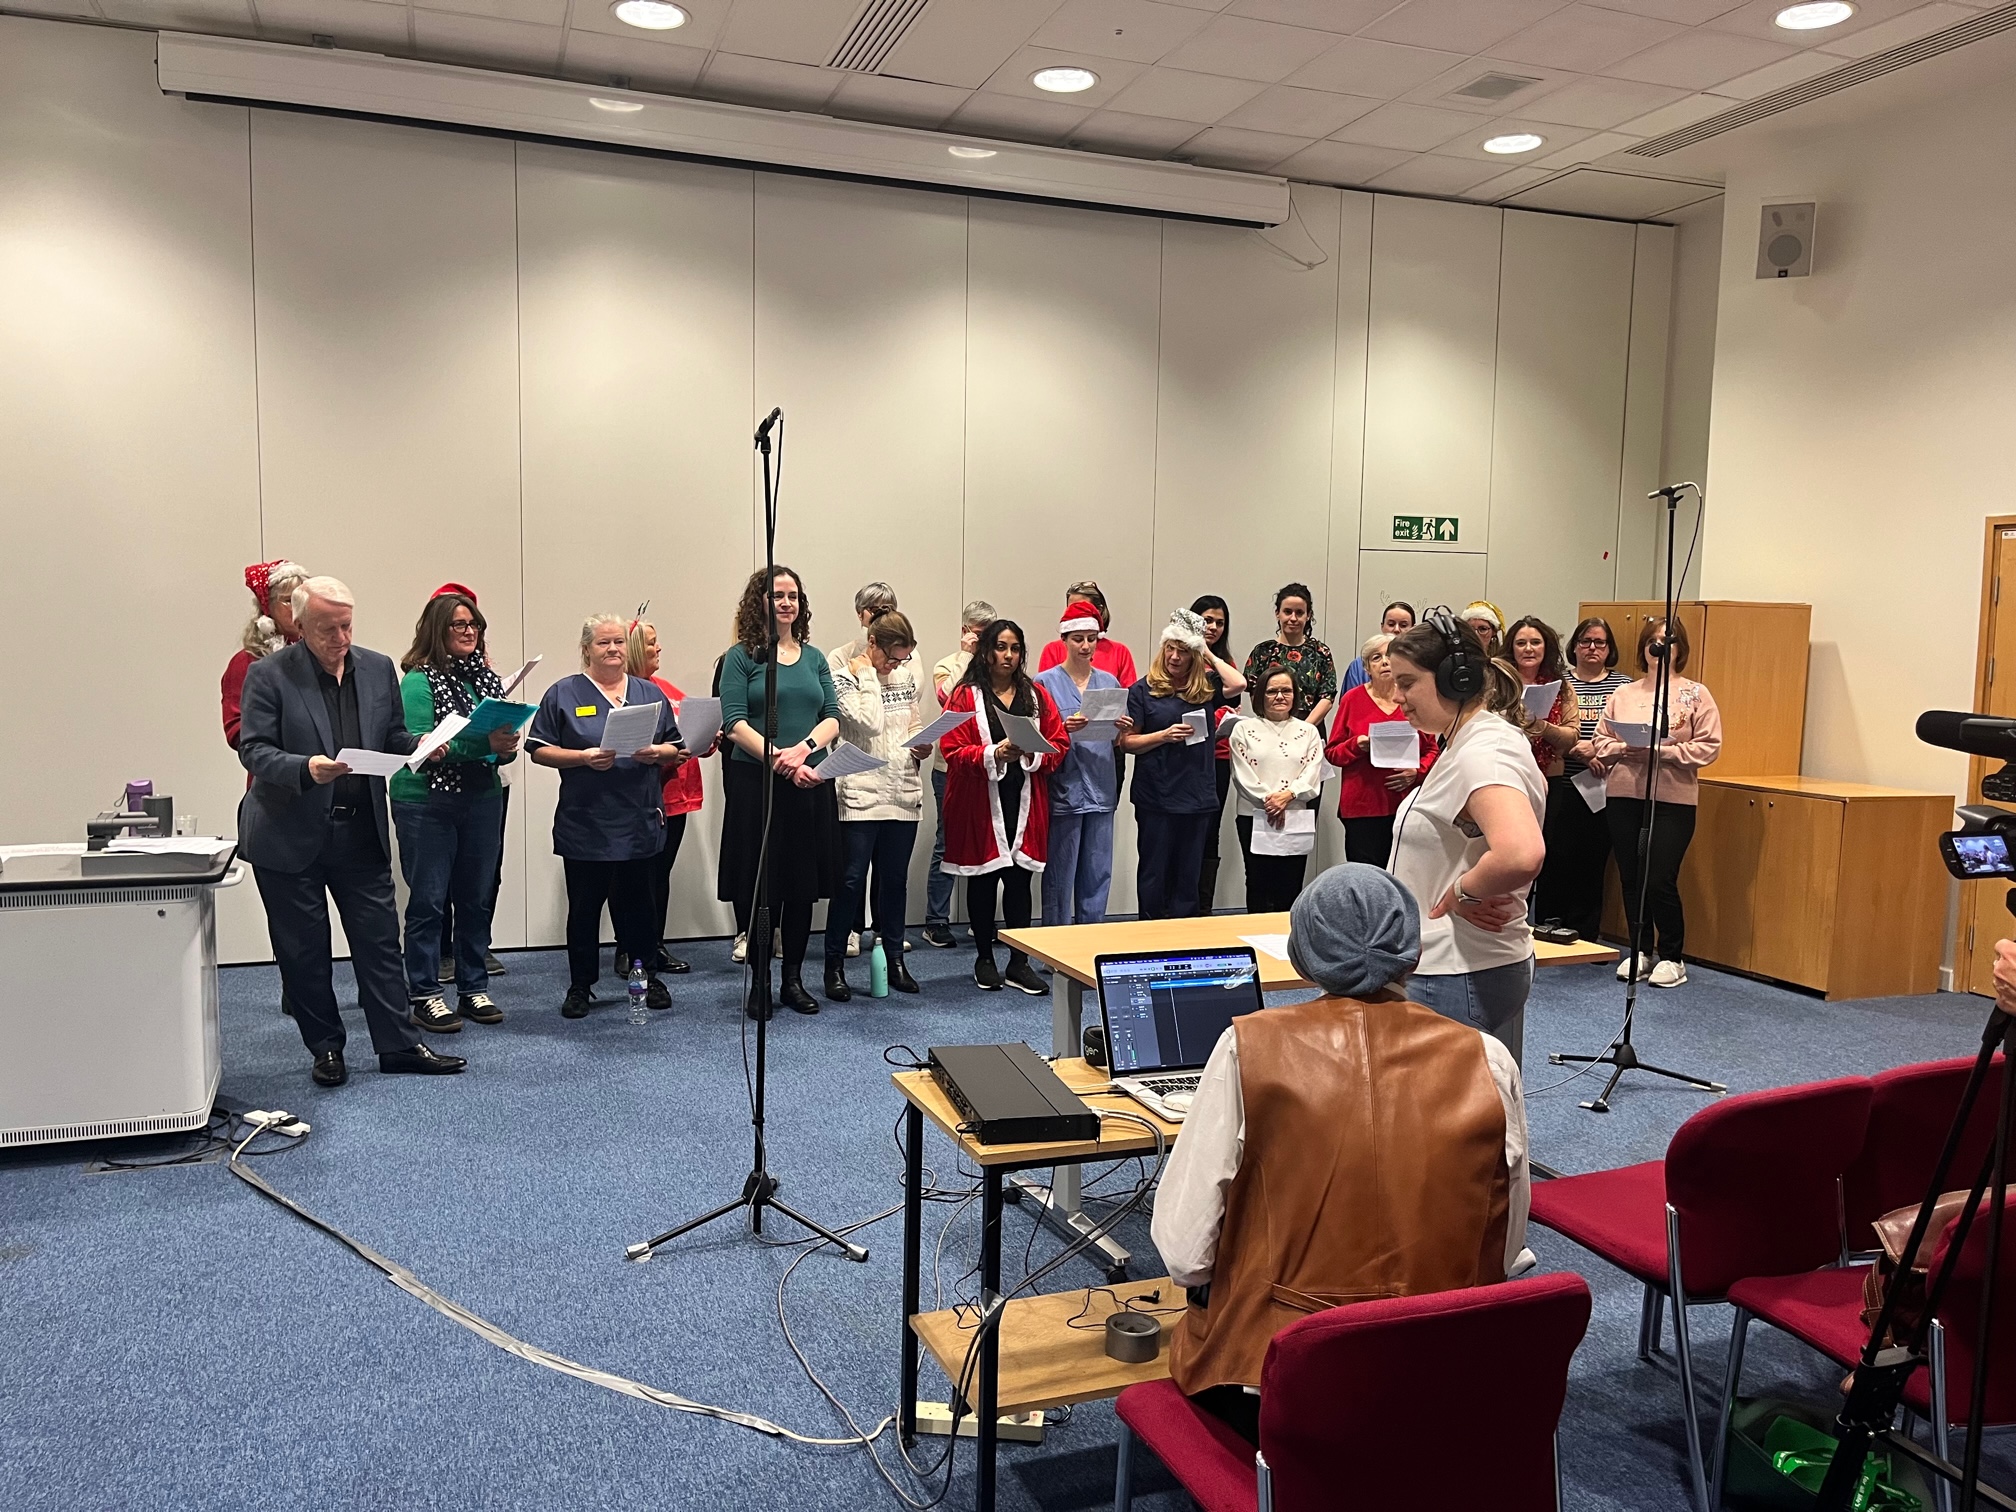 NHS choir in rehearsal